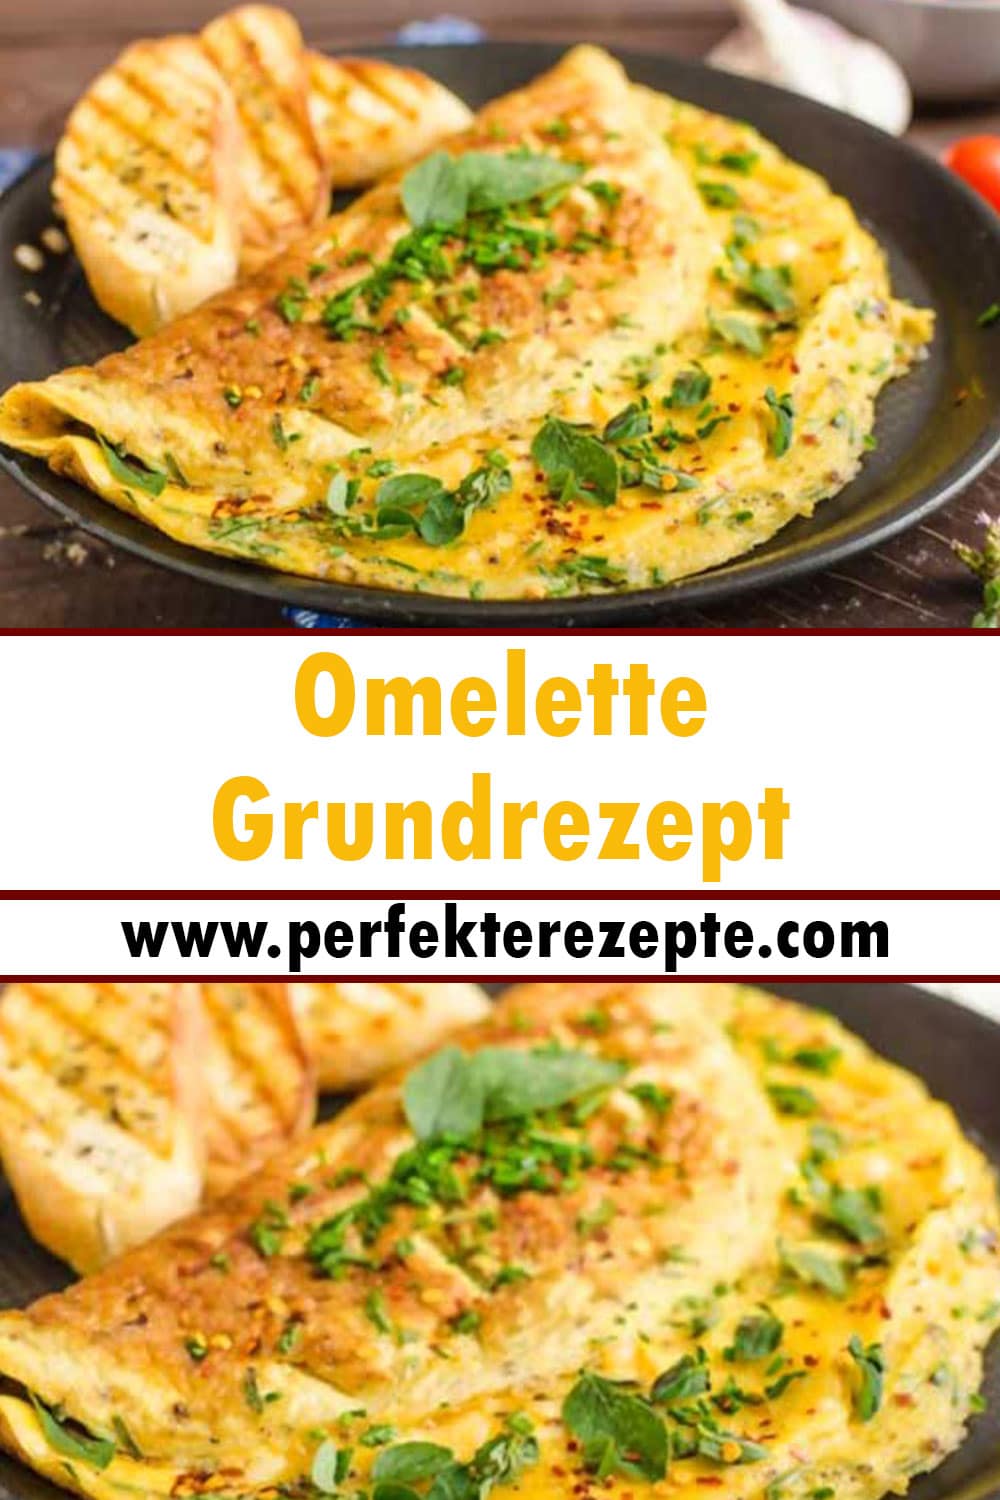 Omelette Grundrezept